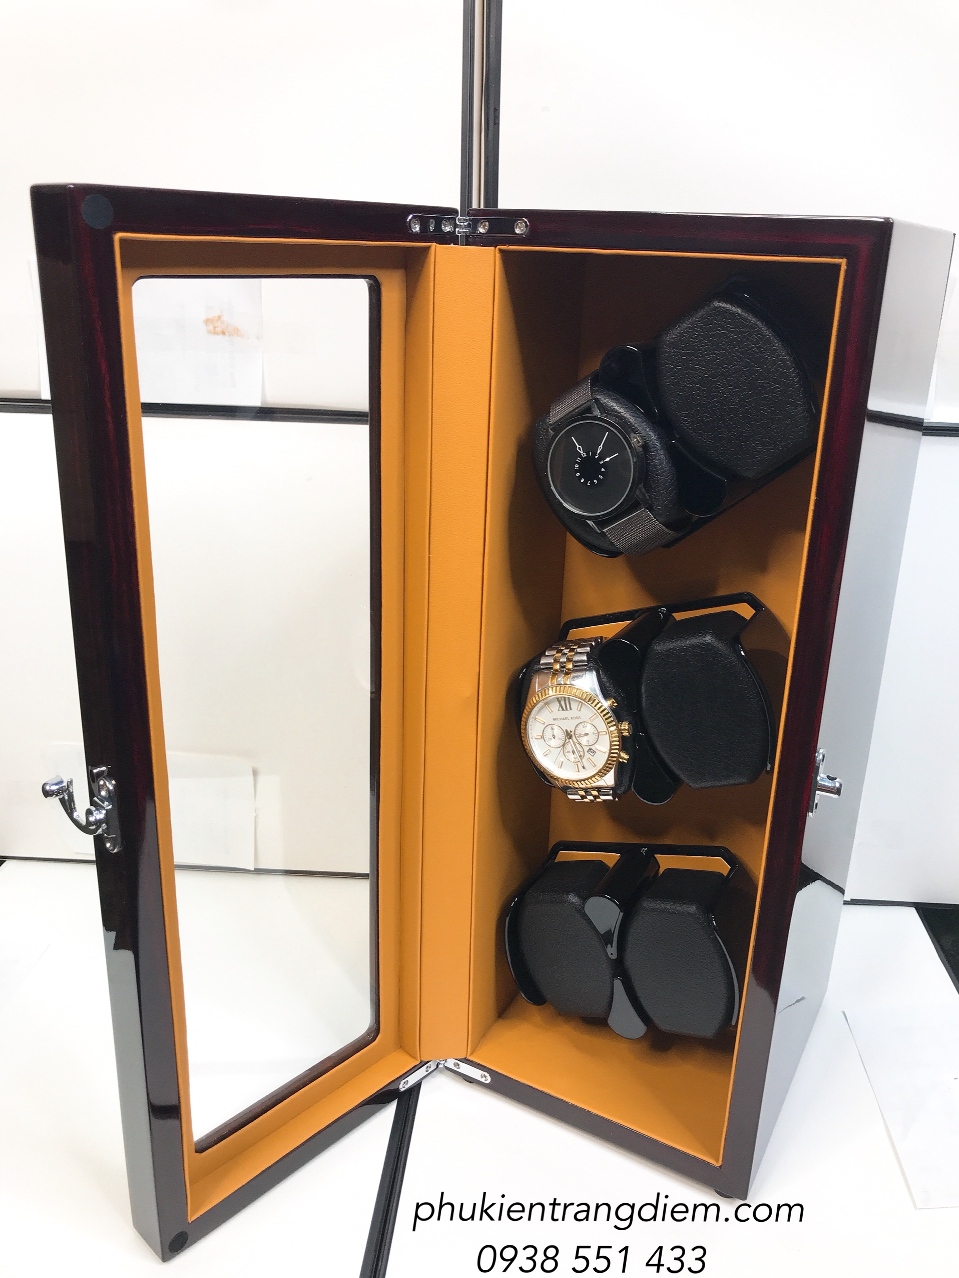 Đăng Quang Watch ra mắt hộp tích cót cho đồng hồ cơ - VnExpress Kinh doanh